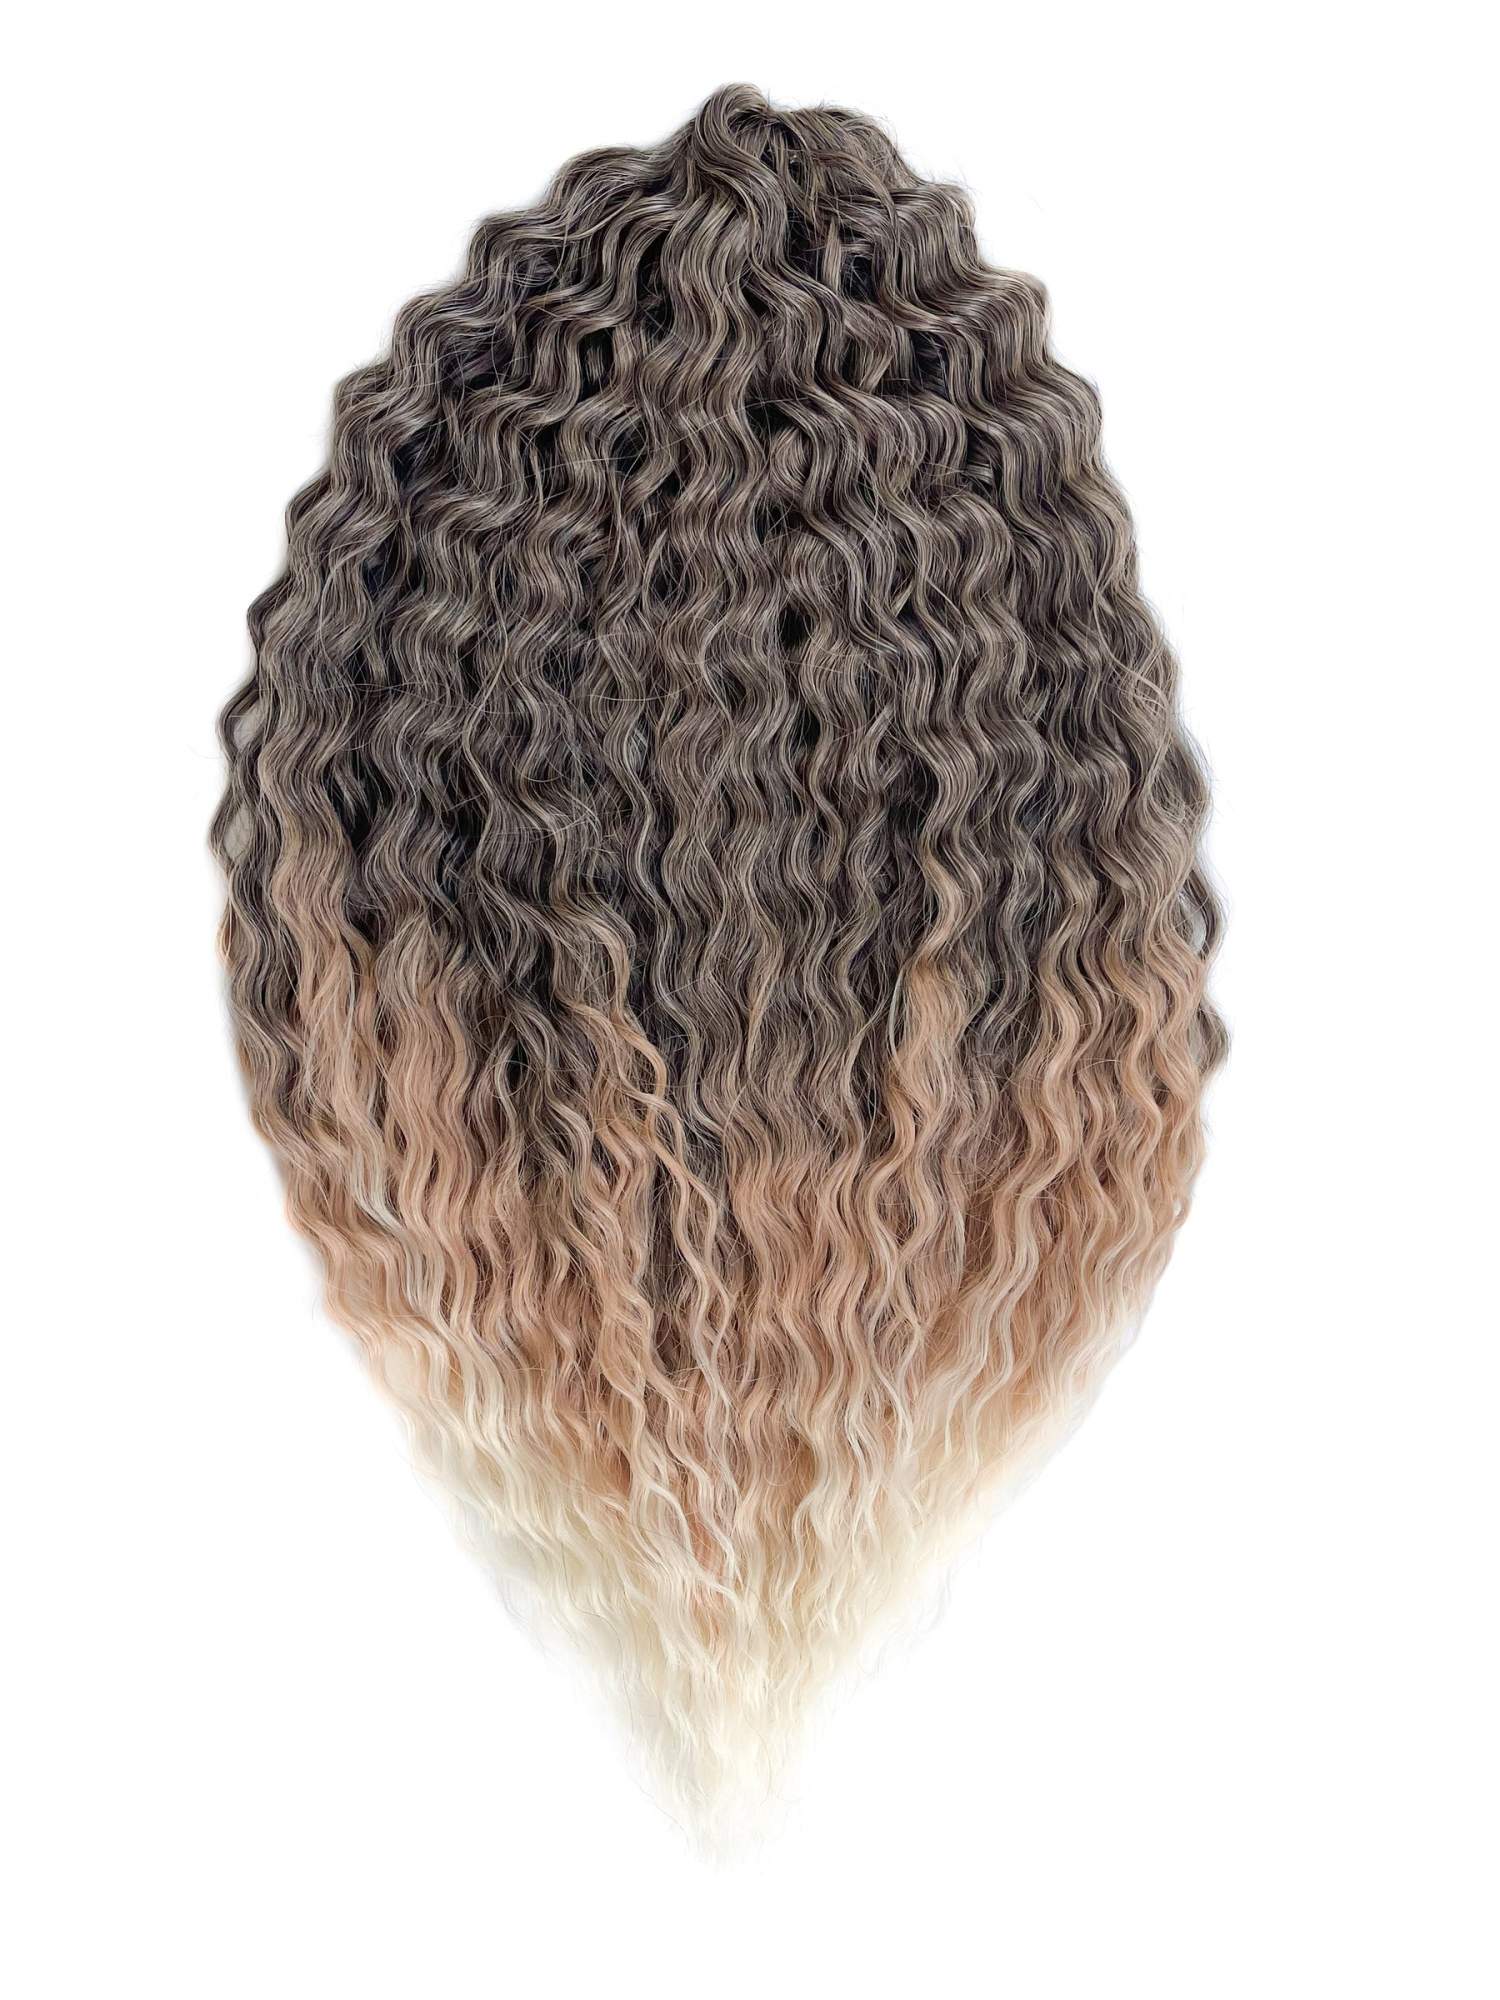 Афрокудри для плетения волос Ariel цвет T1b27 613 каштановый длина 60см вес 300г beam робототехника от азов до создания практических устройств